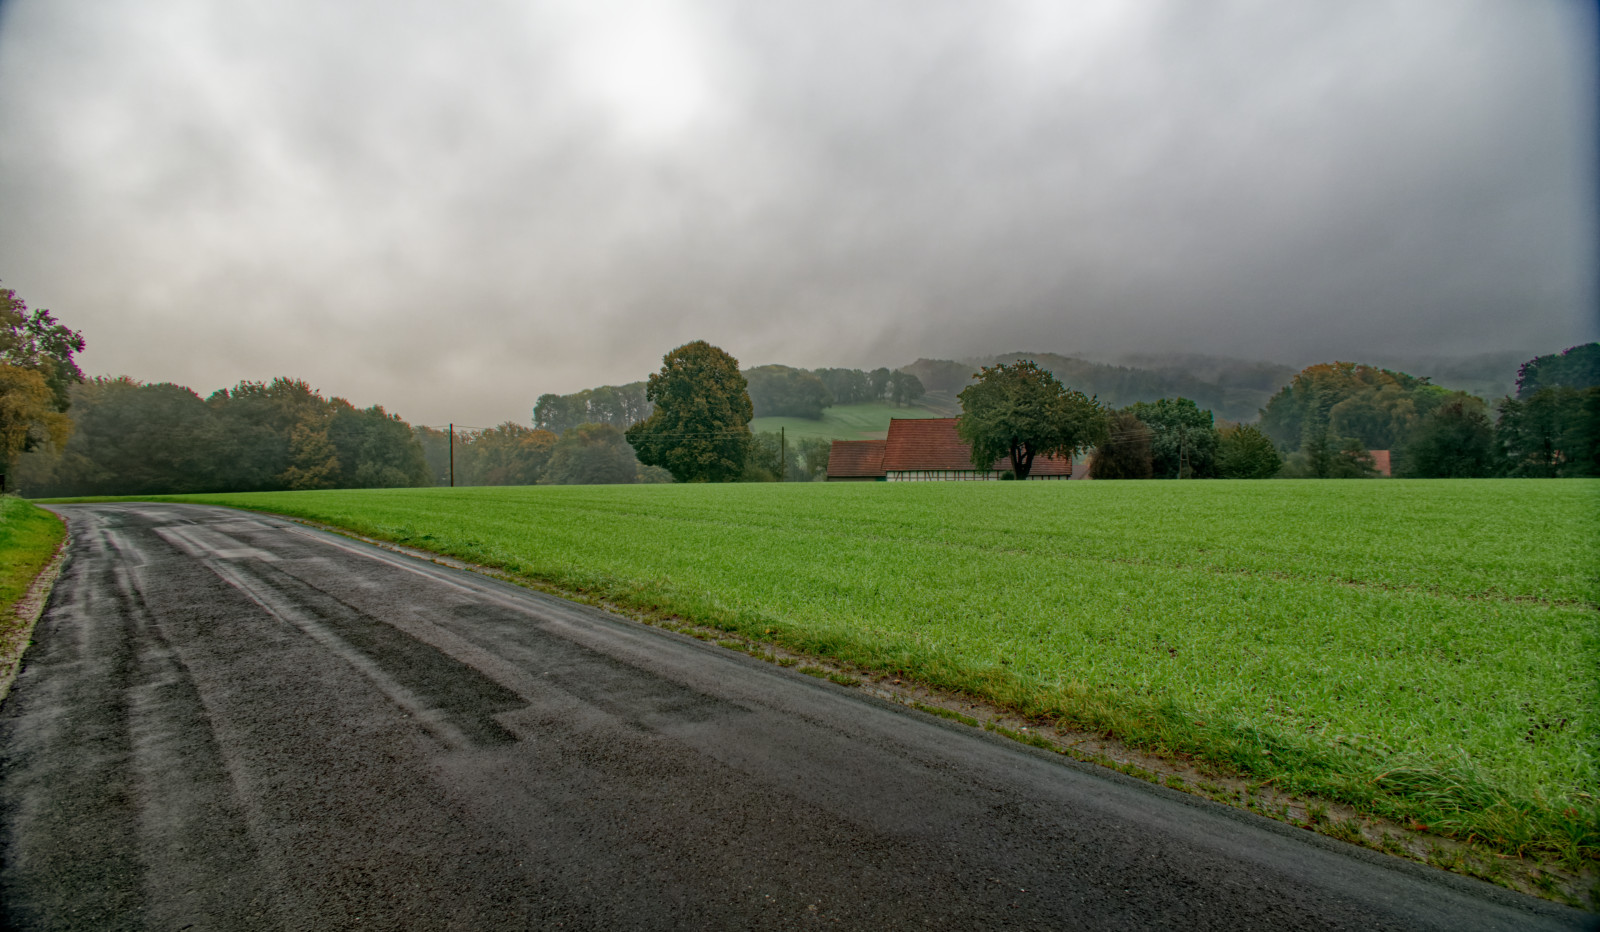 Eine feuchte, dunkle Landstraße unter dichten grauen Wolken, im Hintergrund grüne Hügel und ein rot gedecktes FachwerkHaus